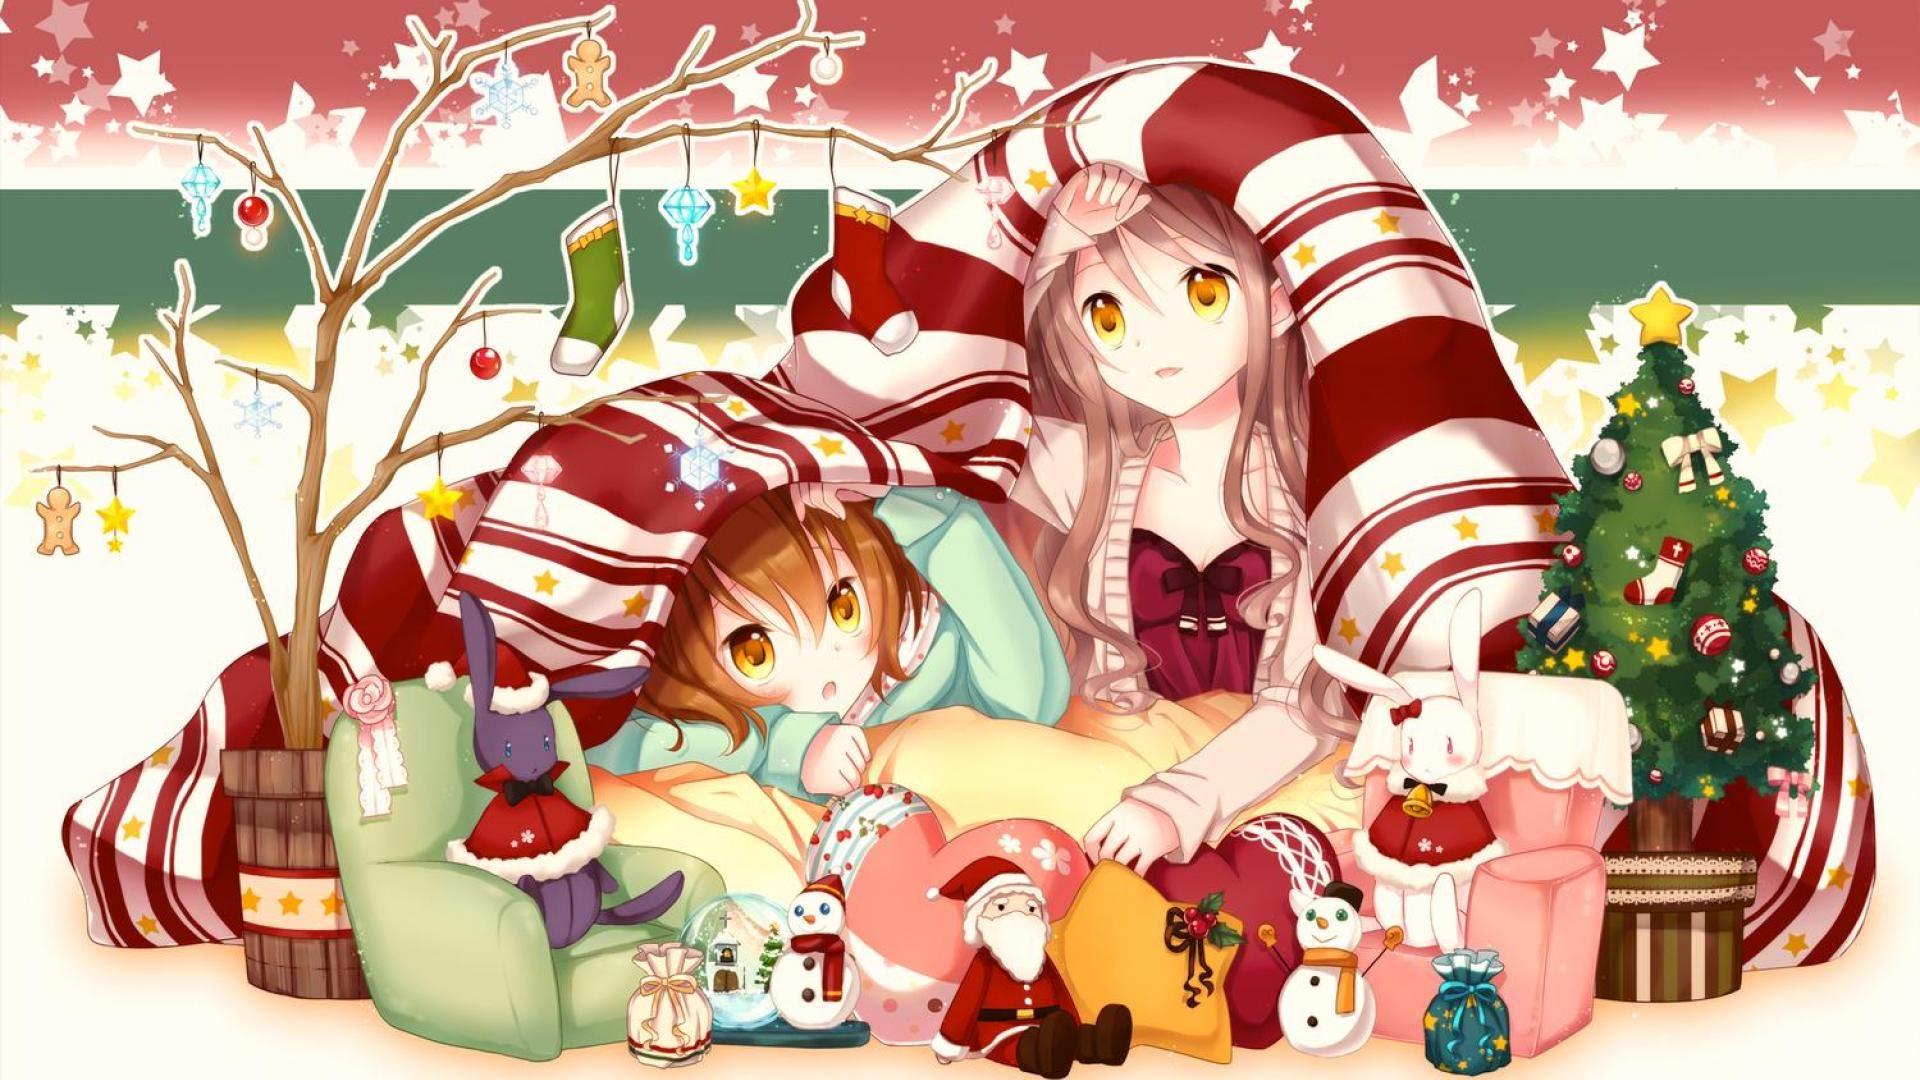 Anime Christmas Wallpaper Free download. Anime, Christmas